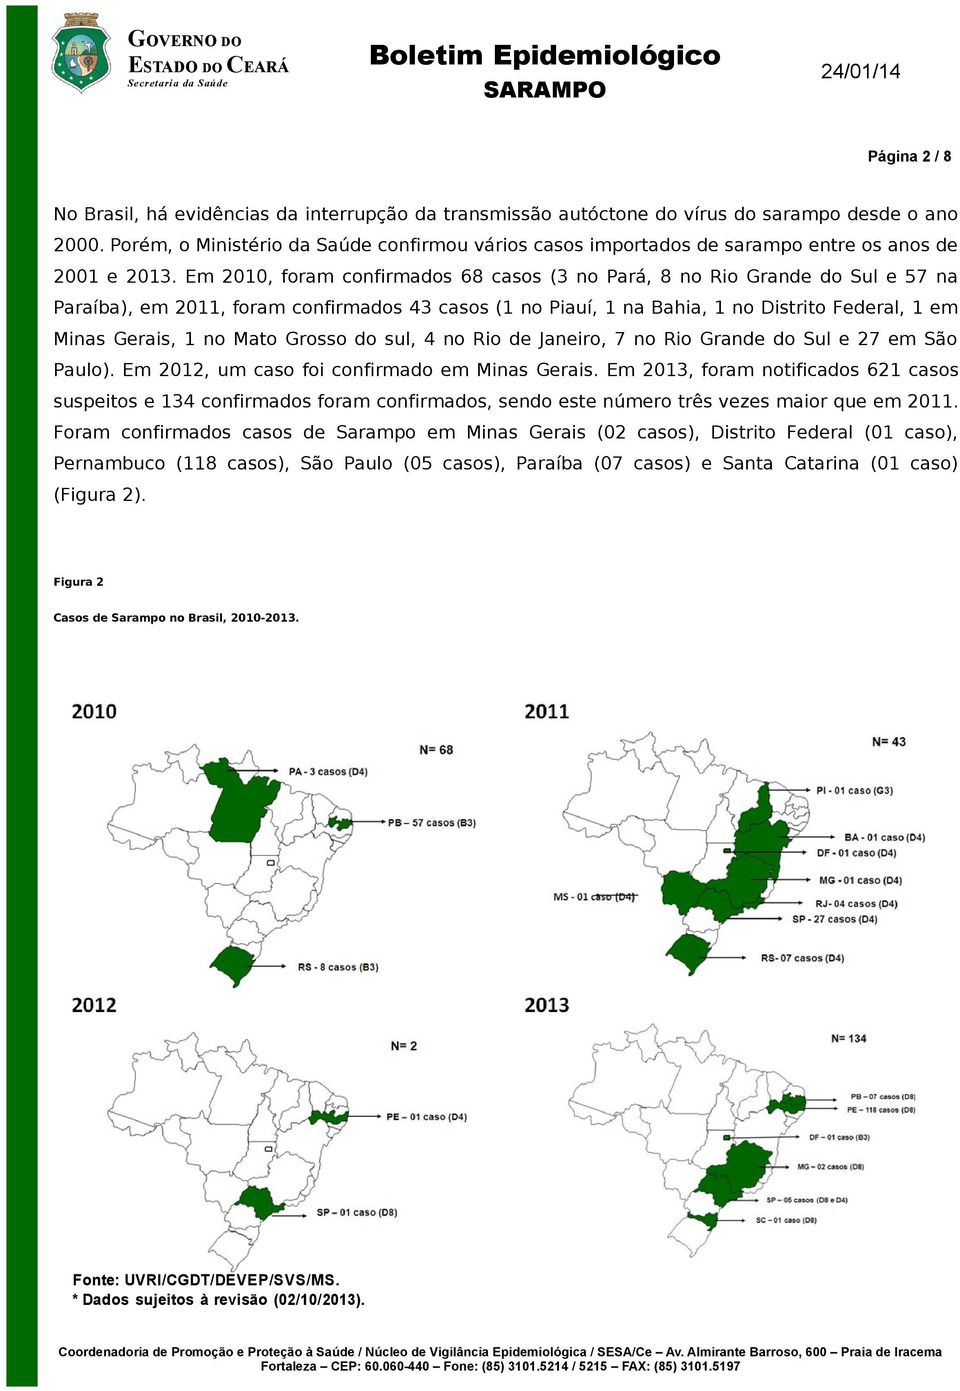 Em 2010, foram confirmados 68 casos (3 no Pará, 8 no Rio Grande do Sul e 57 na Paraíba), em 2011, foram confirmados 43 casos (1 no Piauí, 1 na Bahia, 1 no Distrito Federal, 1 em Minas Gerais, 1 no